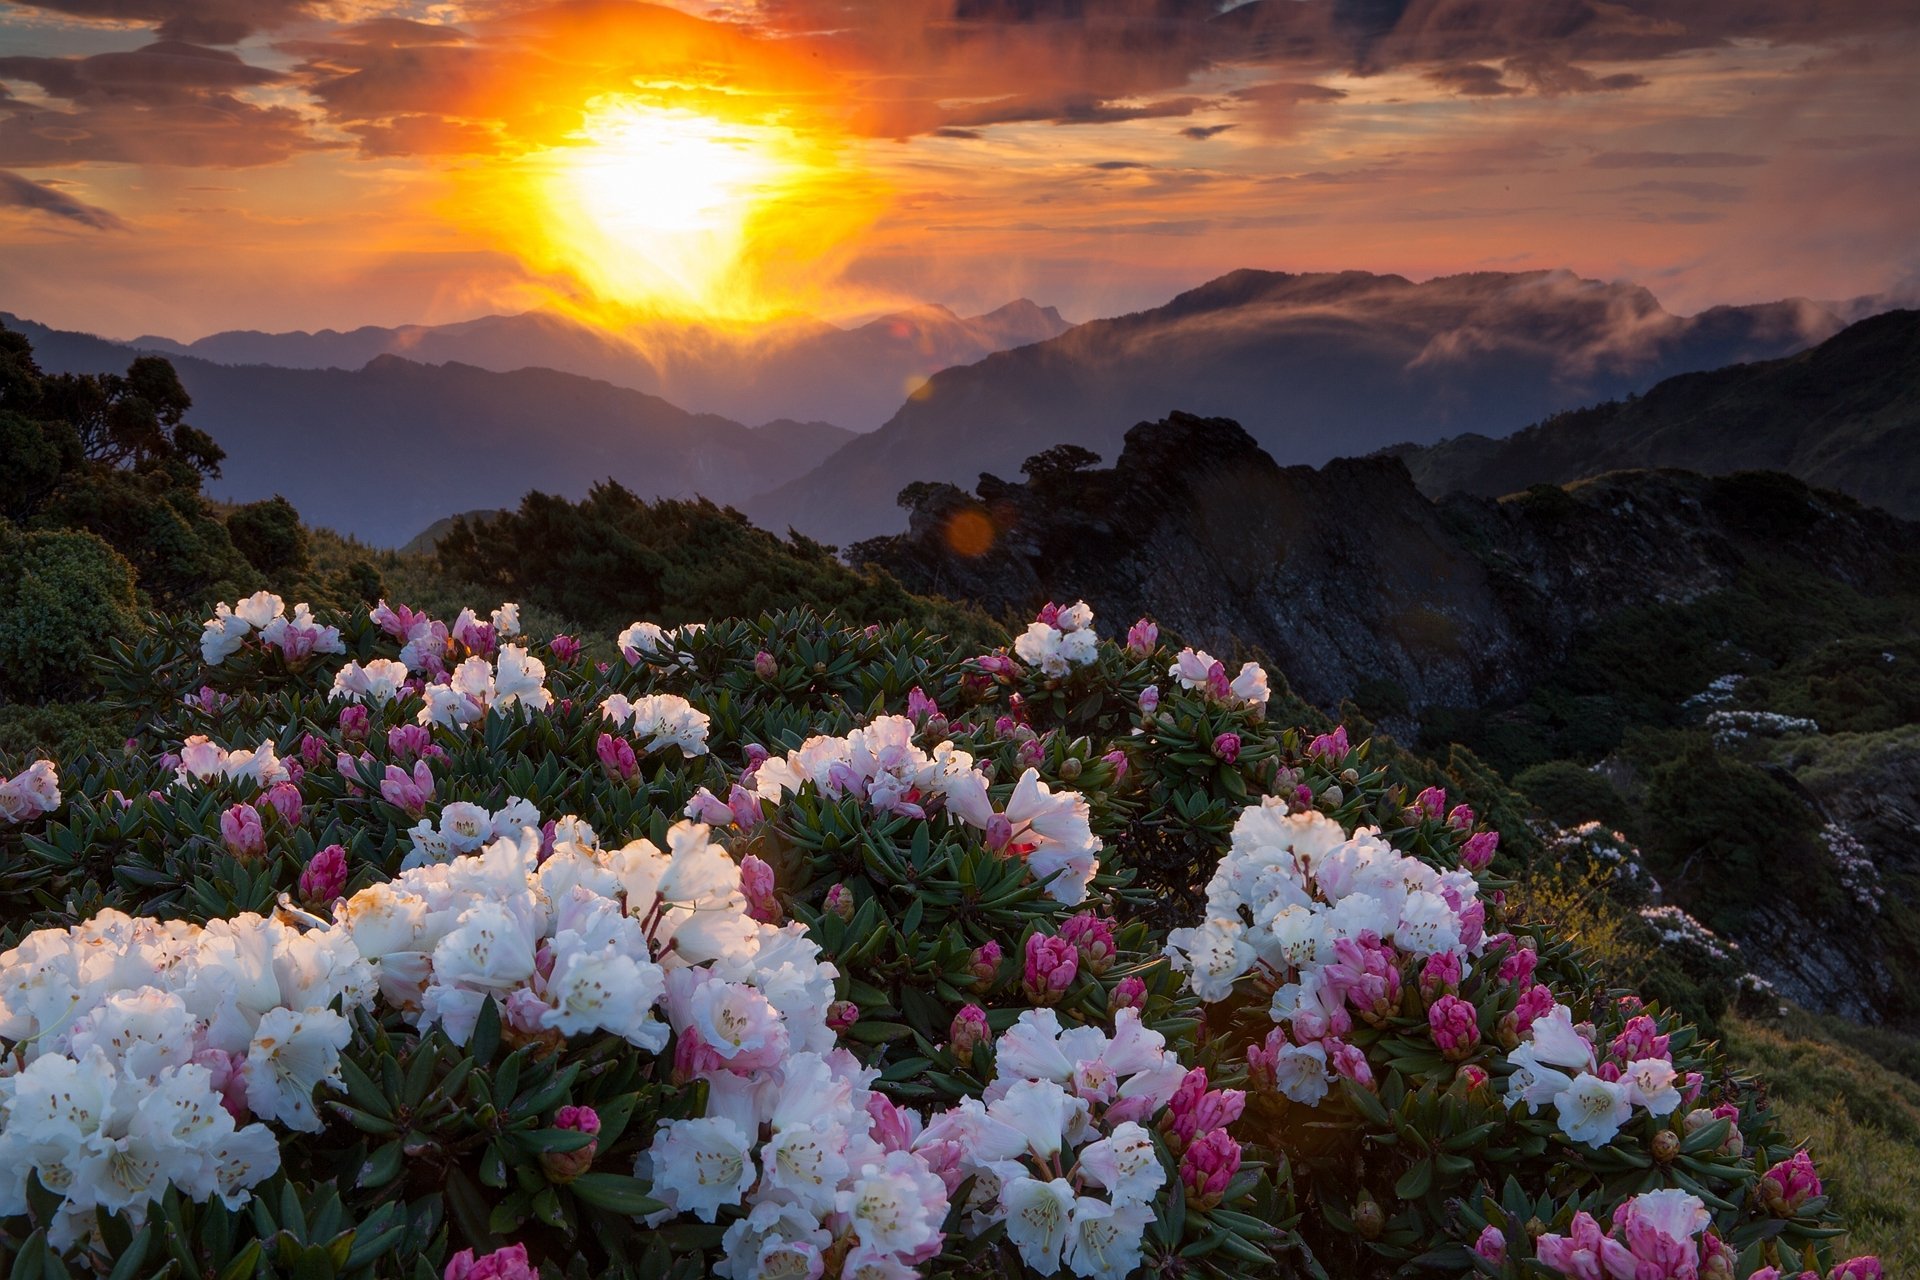 Заставка на телефон для женщин природа. Рододендрон в горах Монти-Сибиллини. Пейзаж цветы. Красивые пейзажи с цветами. Прекрасные цветы.